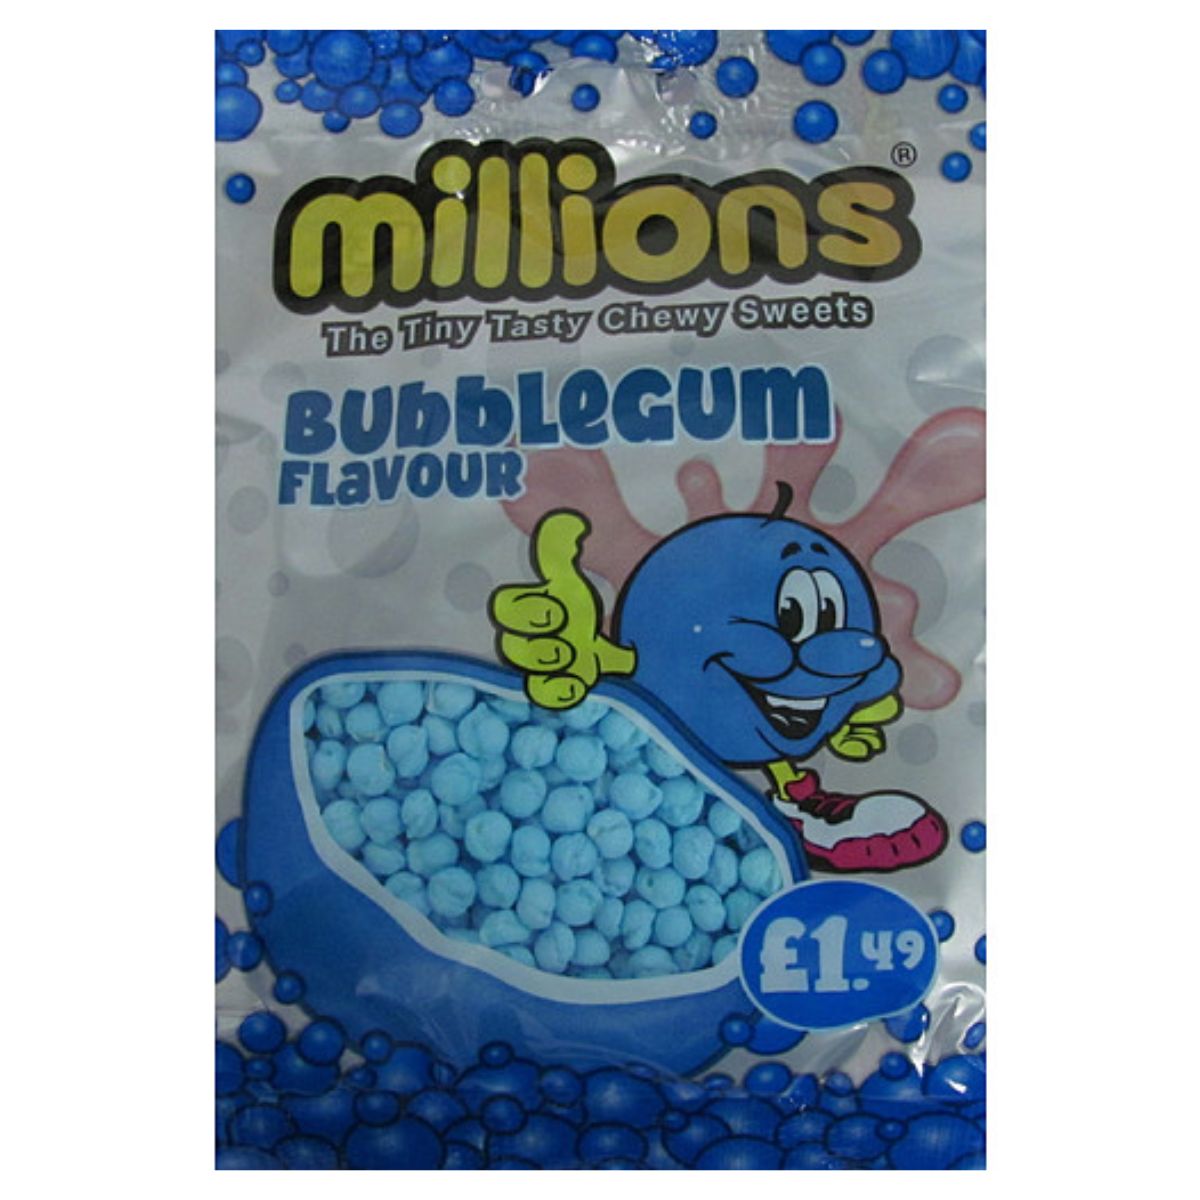 A bag of Millions - Bubblegum Flavour - 110g.